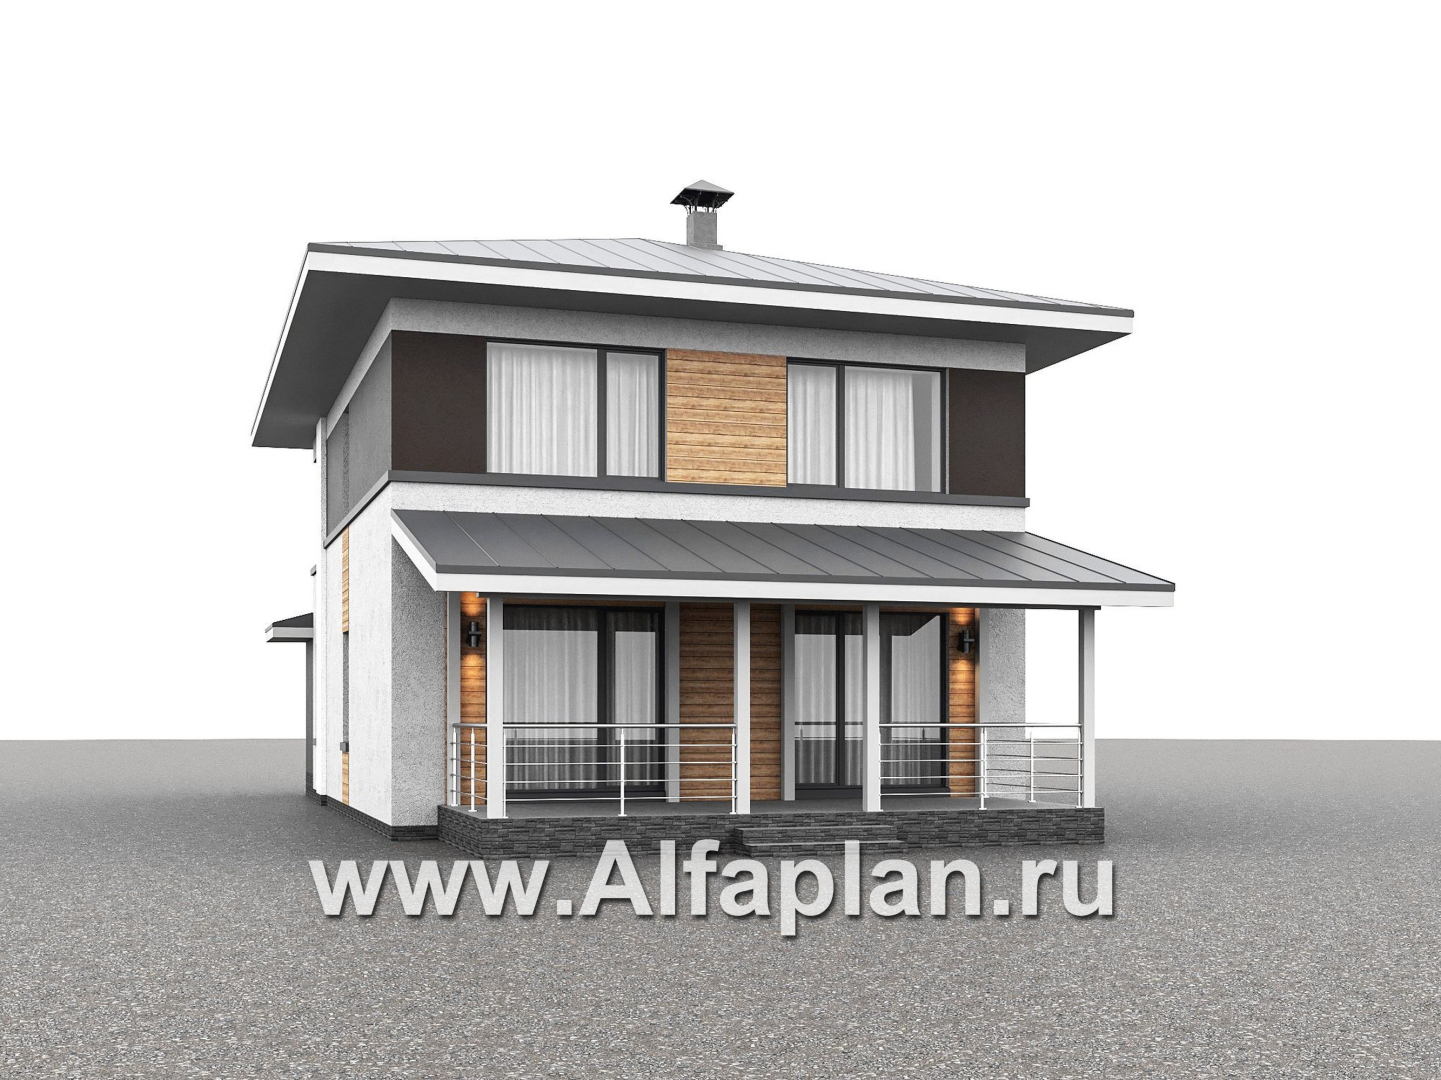 Проекты домов Альфаплан - "Генезис" - проект дома, 2 этажа, с остекленной террасой в стиле Райта - дополнительное изображение №2